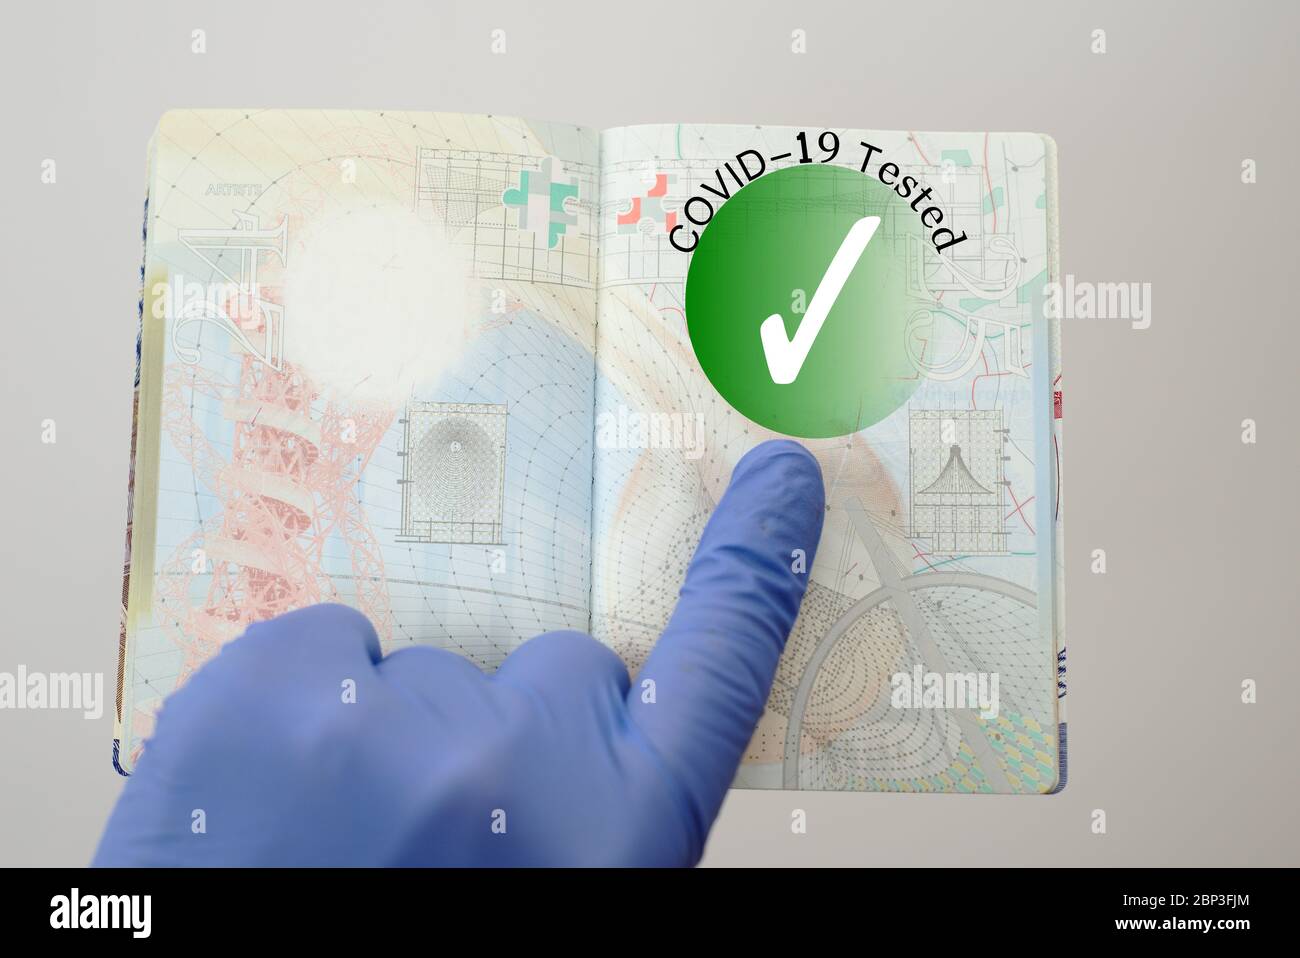 Konzept-Image. Immunity Covid-19 Health Check Stempel in einem Pass erlaubt Reise während Coronavirus Pandemie Stockfoto